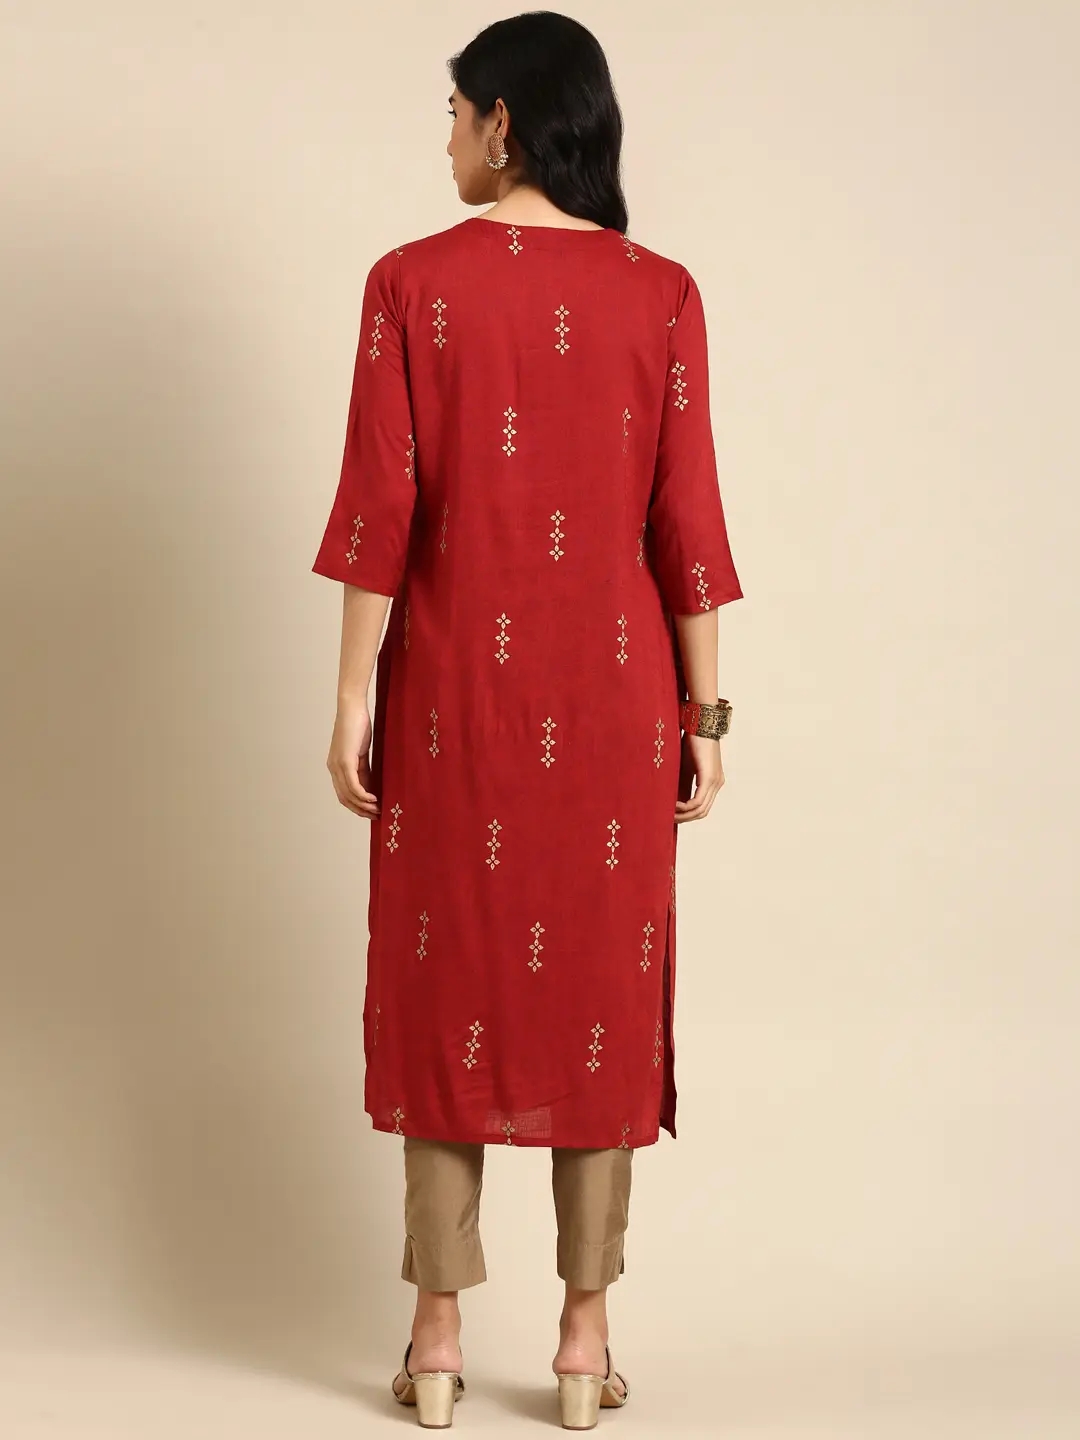 Women's Red Chanderi Printed Comfort Fit Kurtas